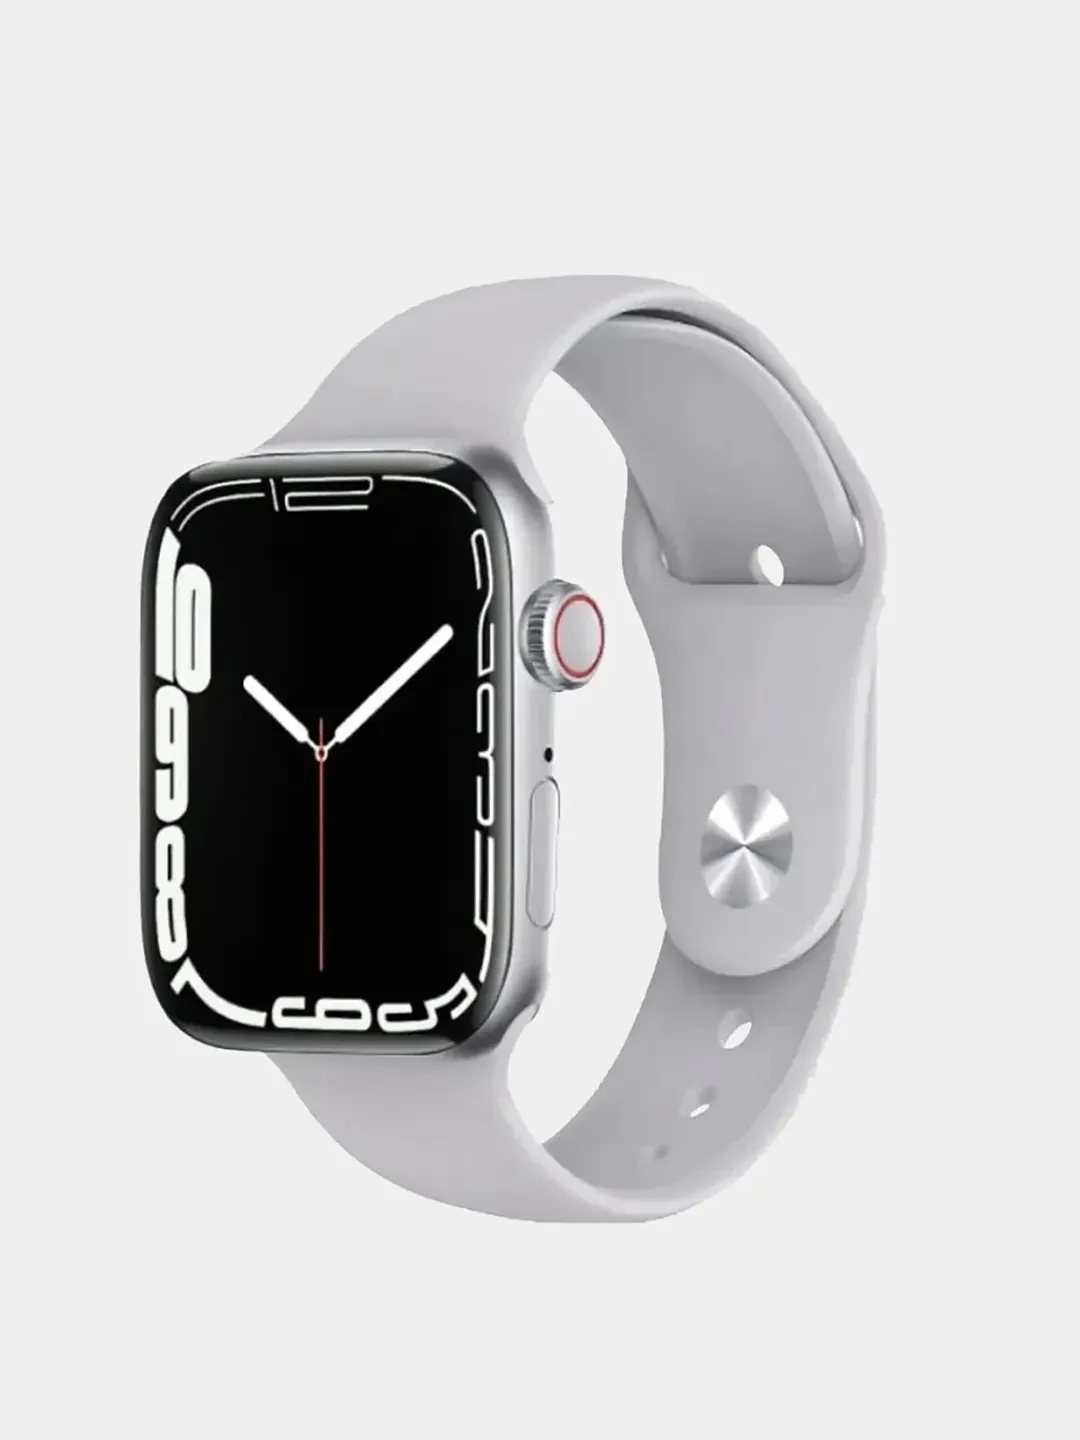 Смарт часы hw22. M16 Mini смарт часы. Apple watch se 40mm. Hw22 Smart watch 6.